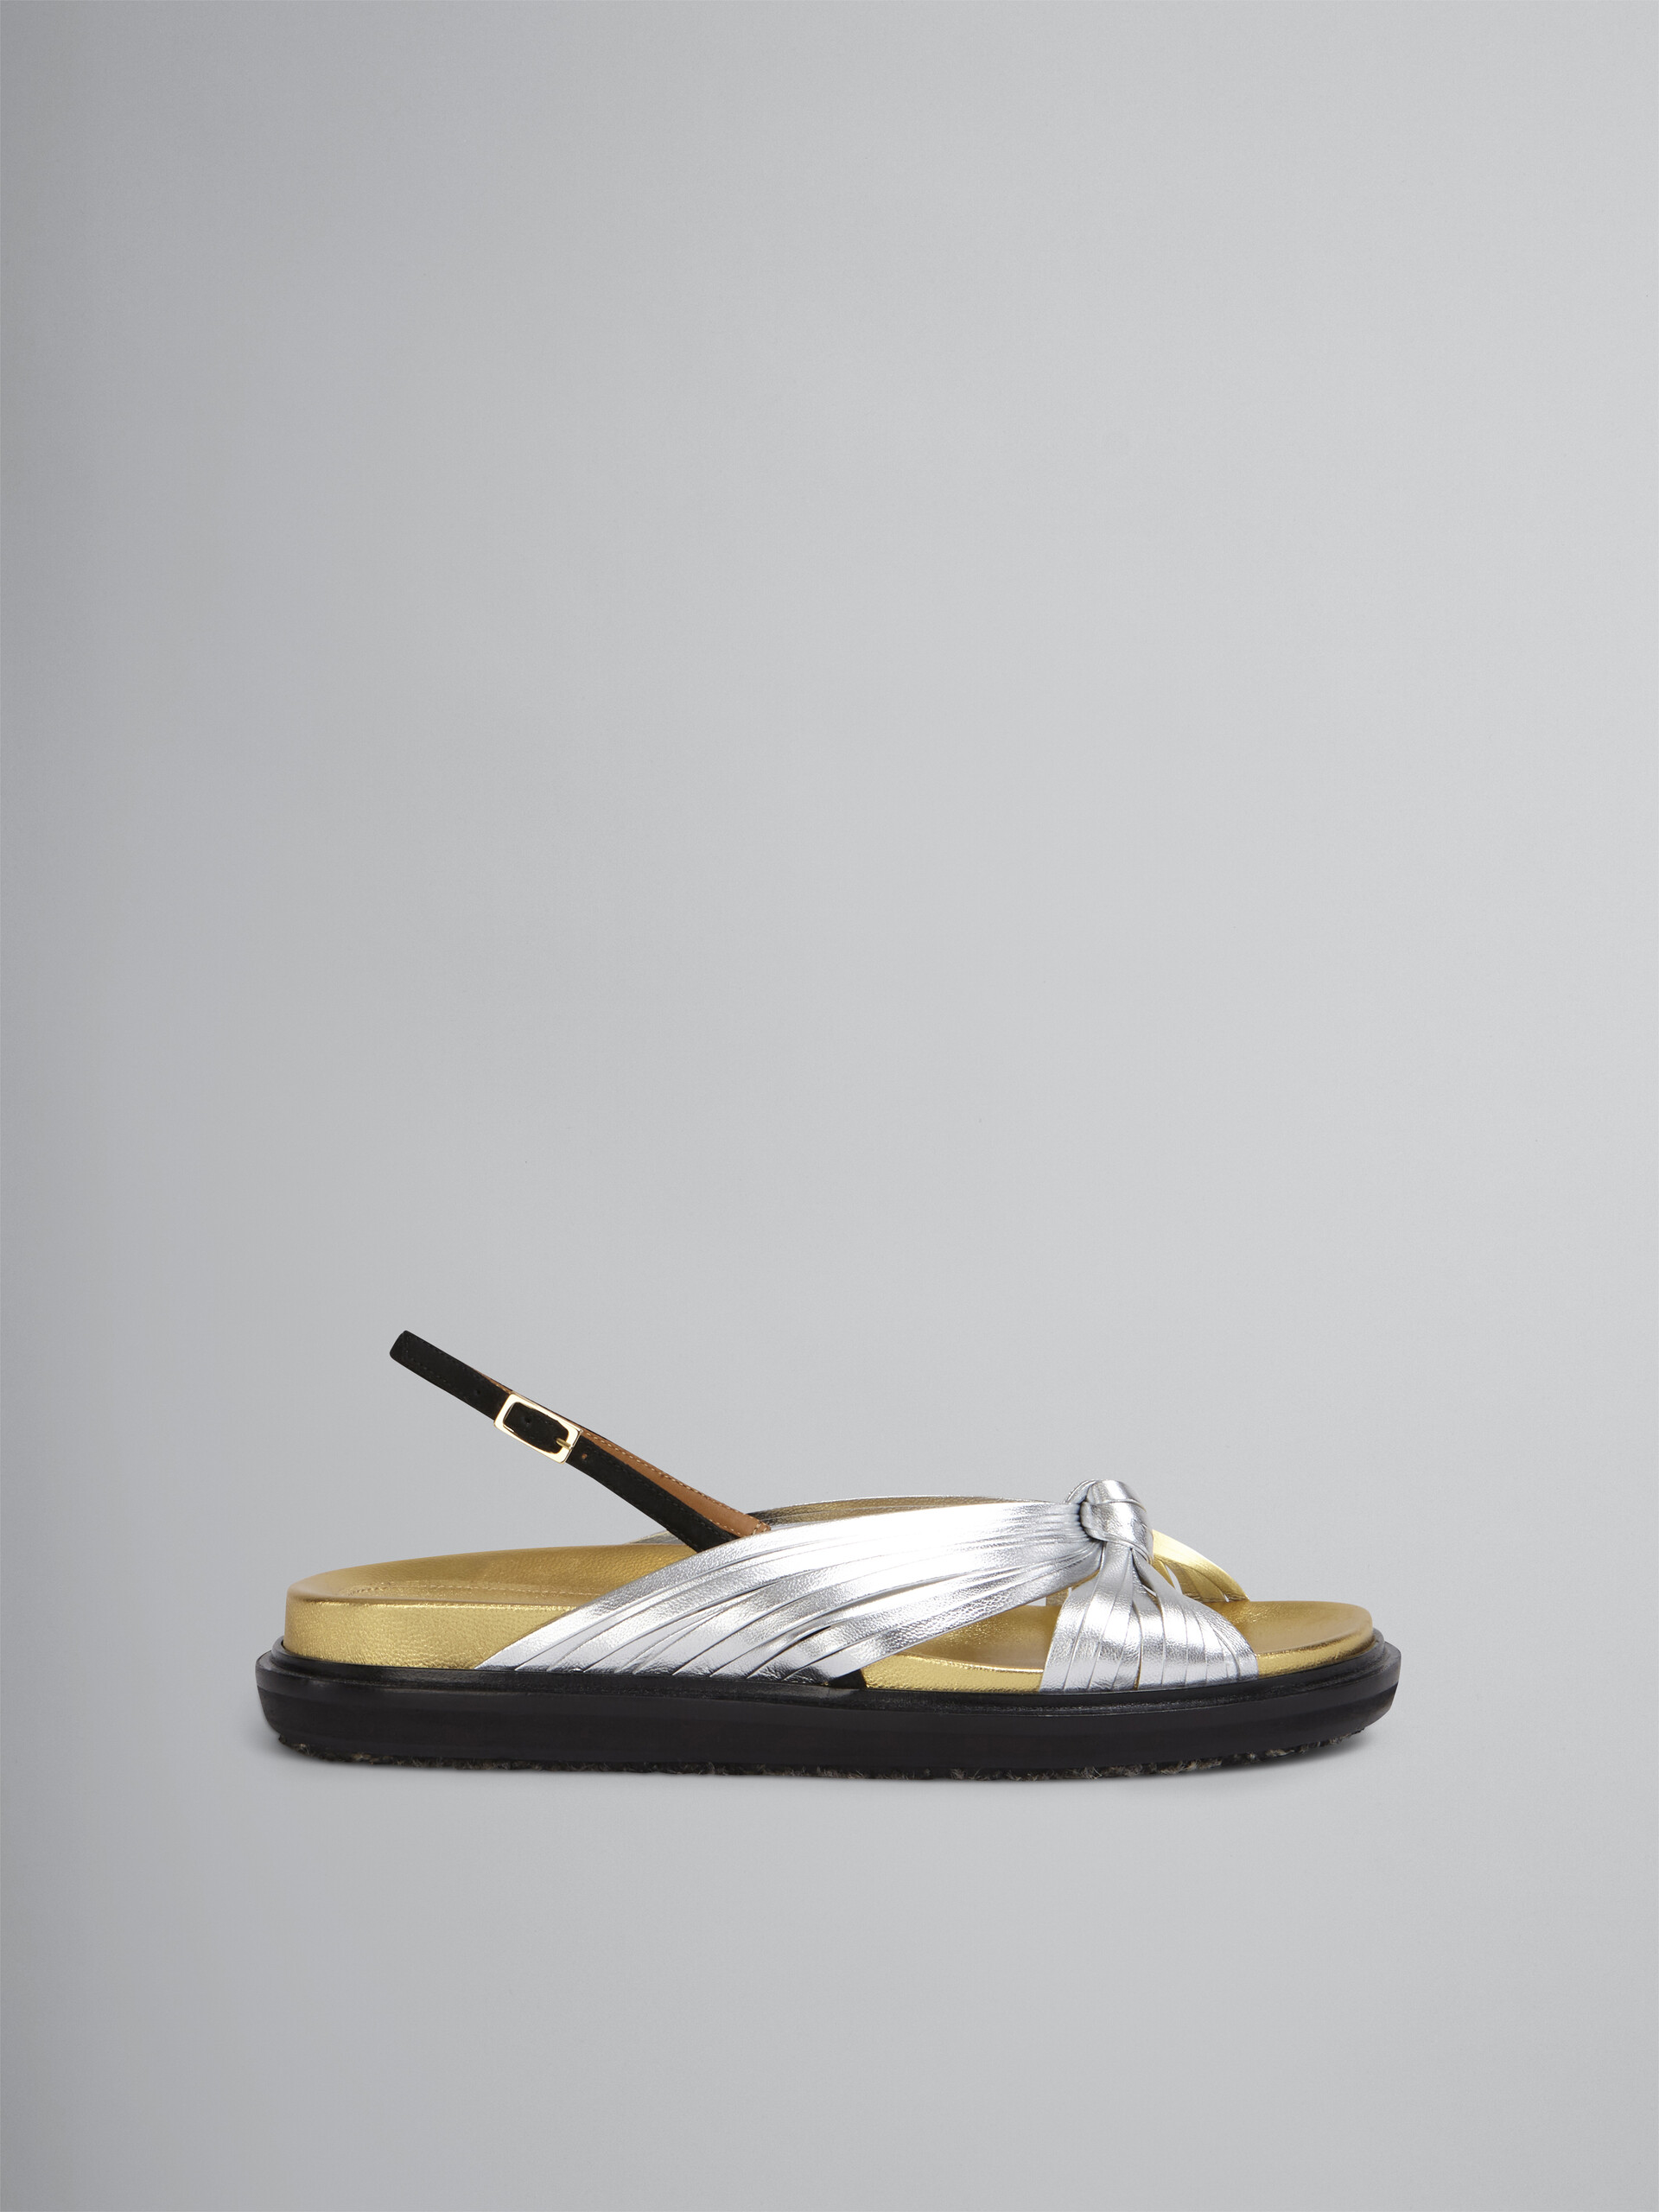 Sandale fussbett en cuir laminé argenté avec brides croisées - Sandales - Image 1